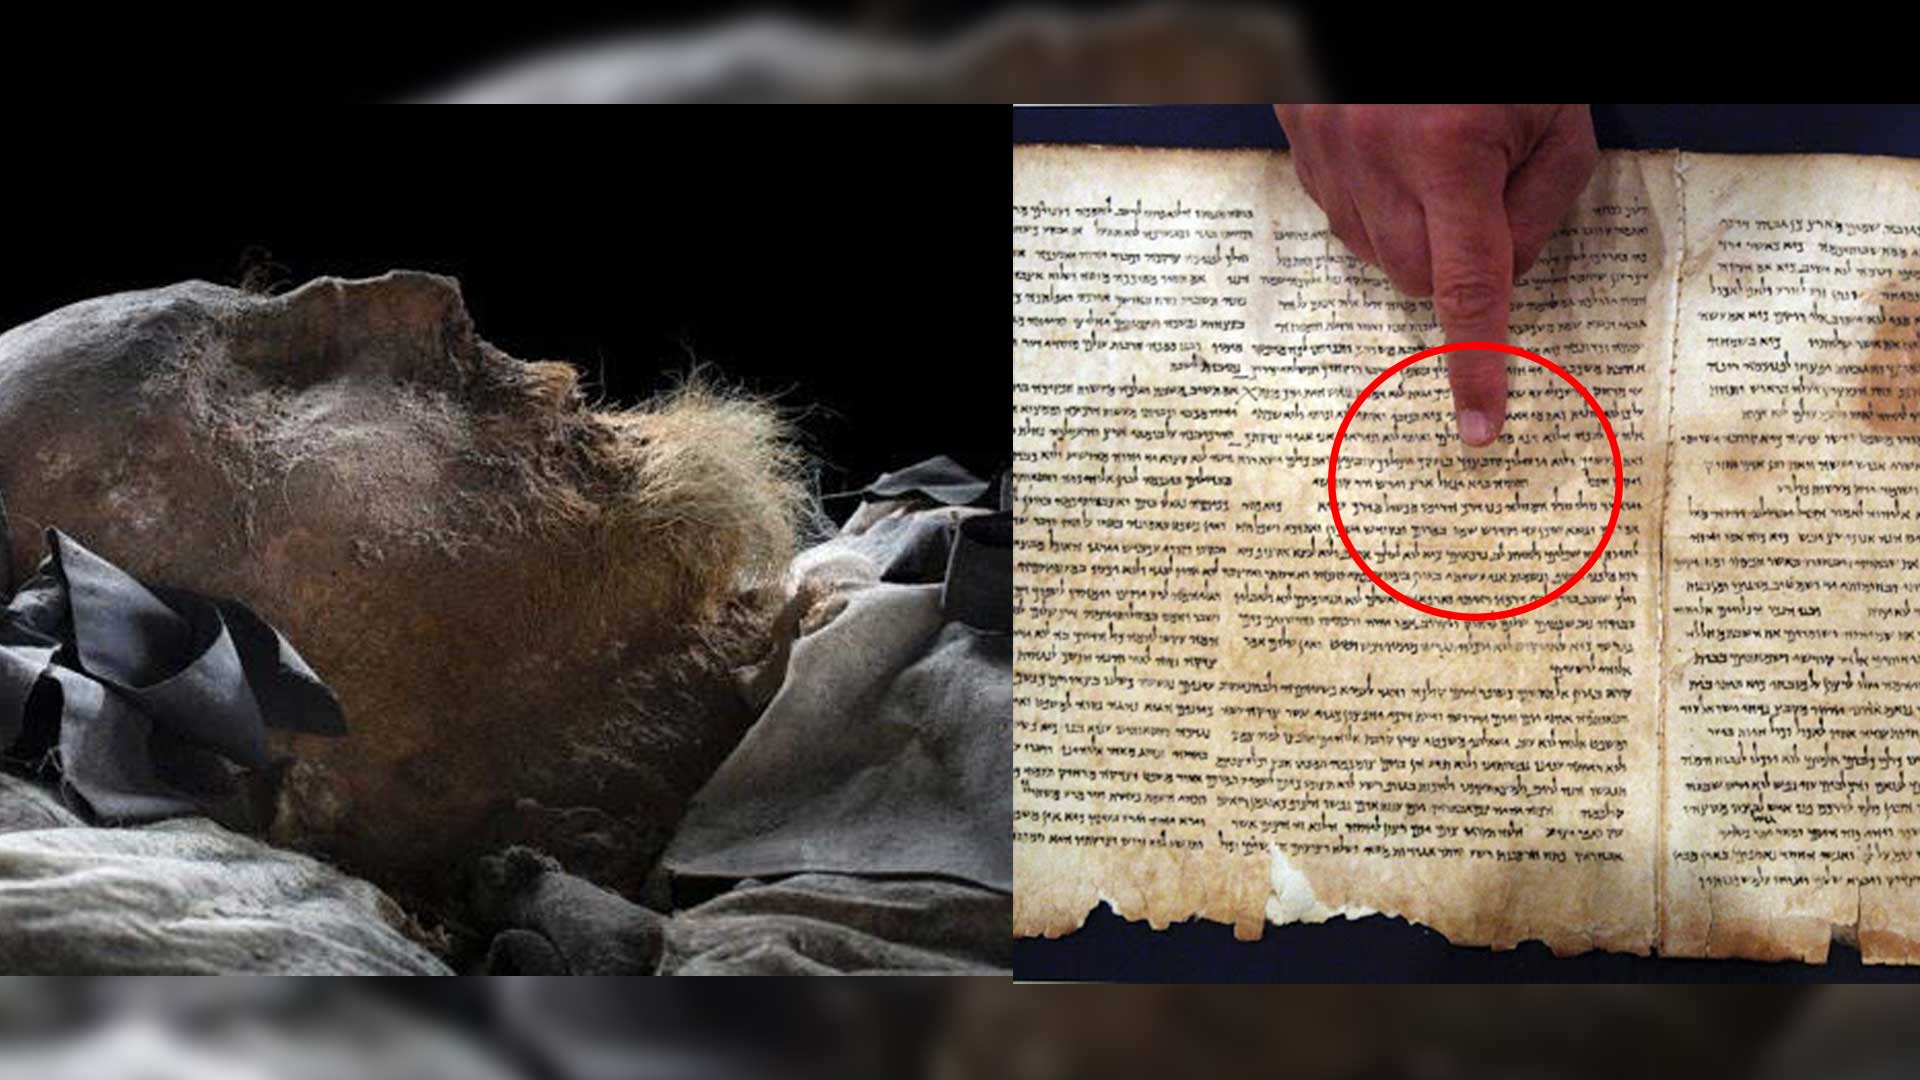 Documentos encontrados en la tumba del décimo papa sacan importantes secretos del cristianismo a la luz